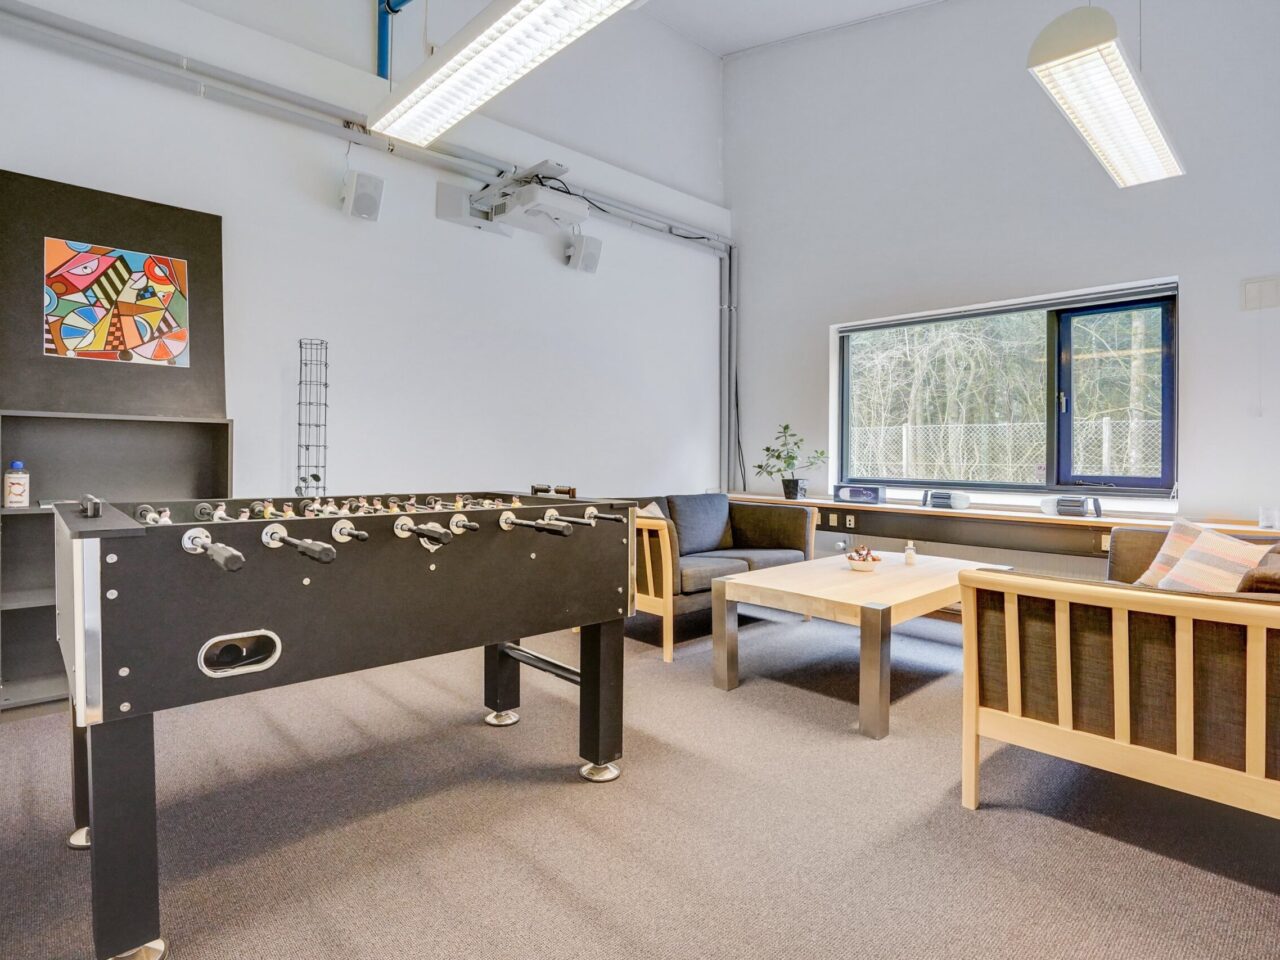 Kontorlokaler til leje i Vejen - Hvidt fælleslokale med lyst trægulv og et vindue, et bordfobold, sofa og kaffebord